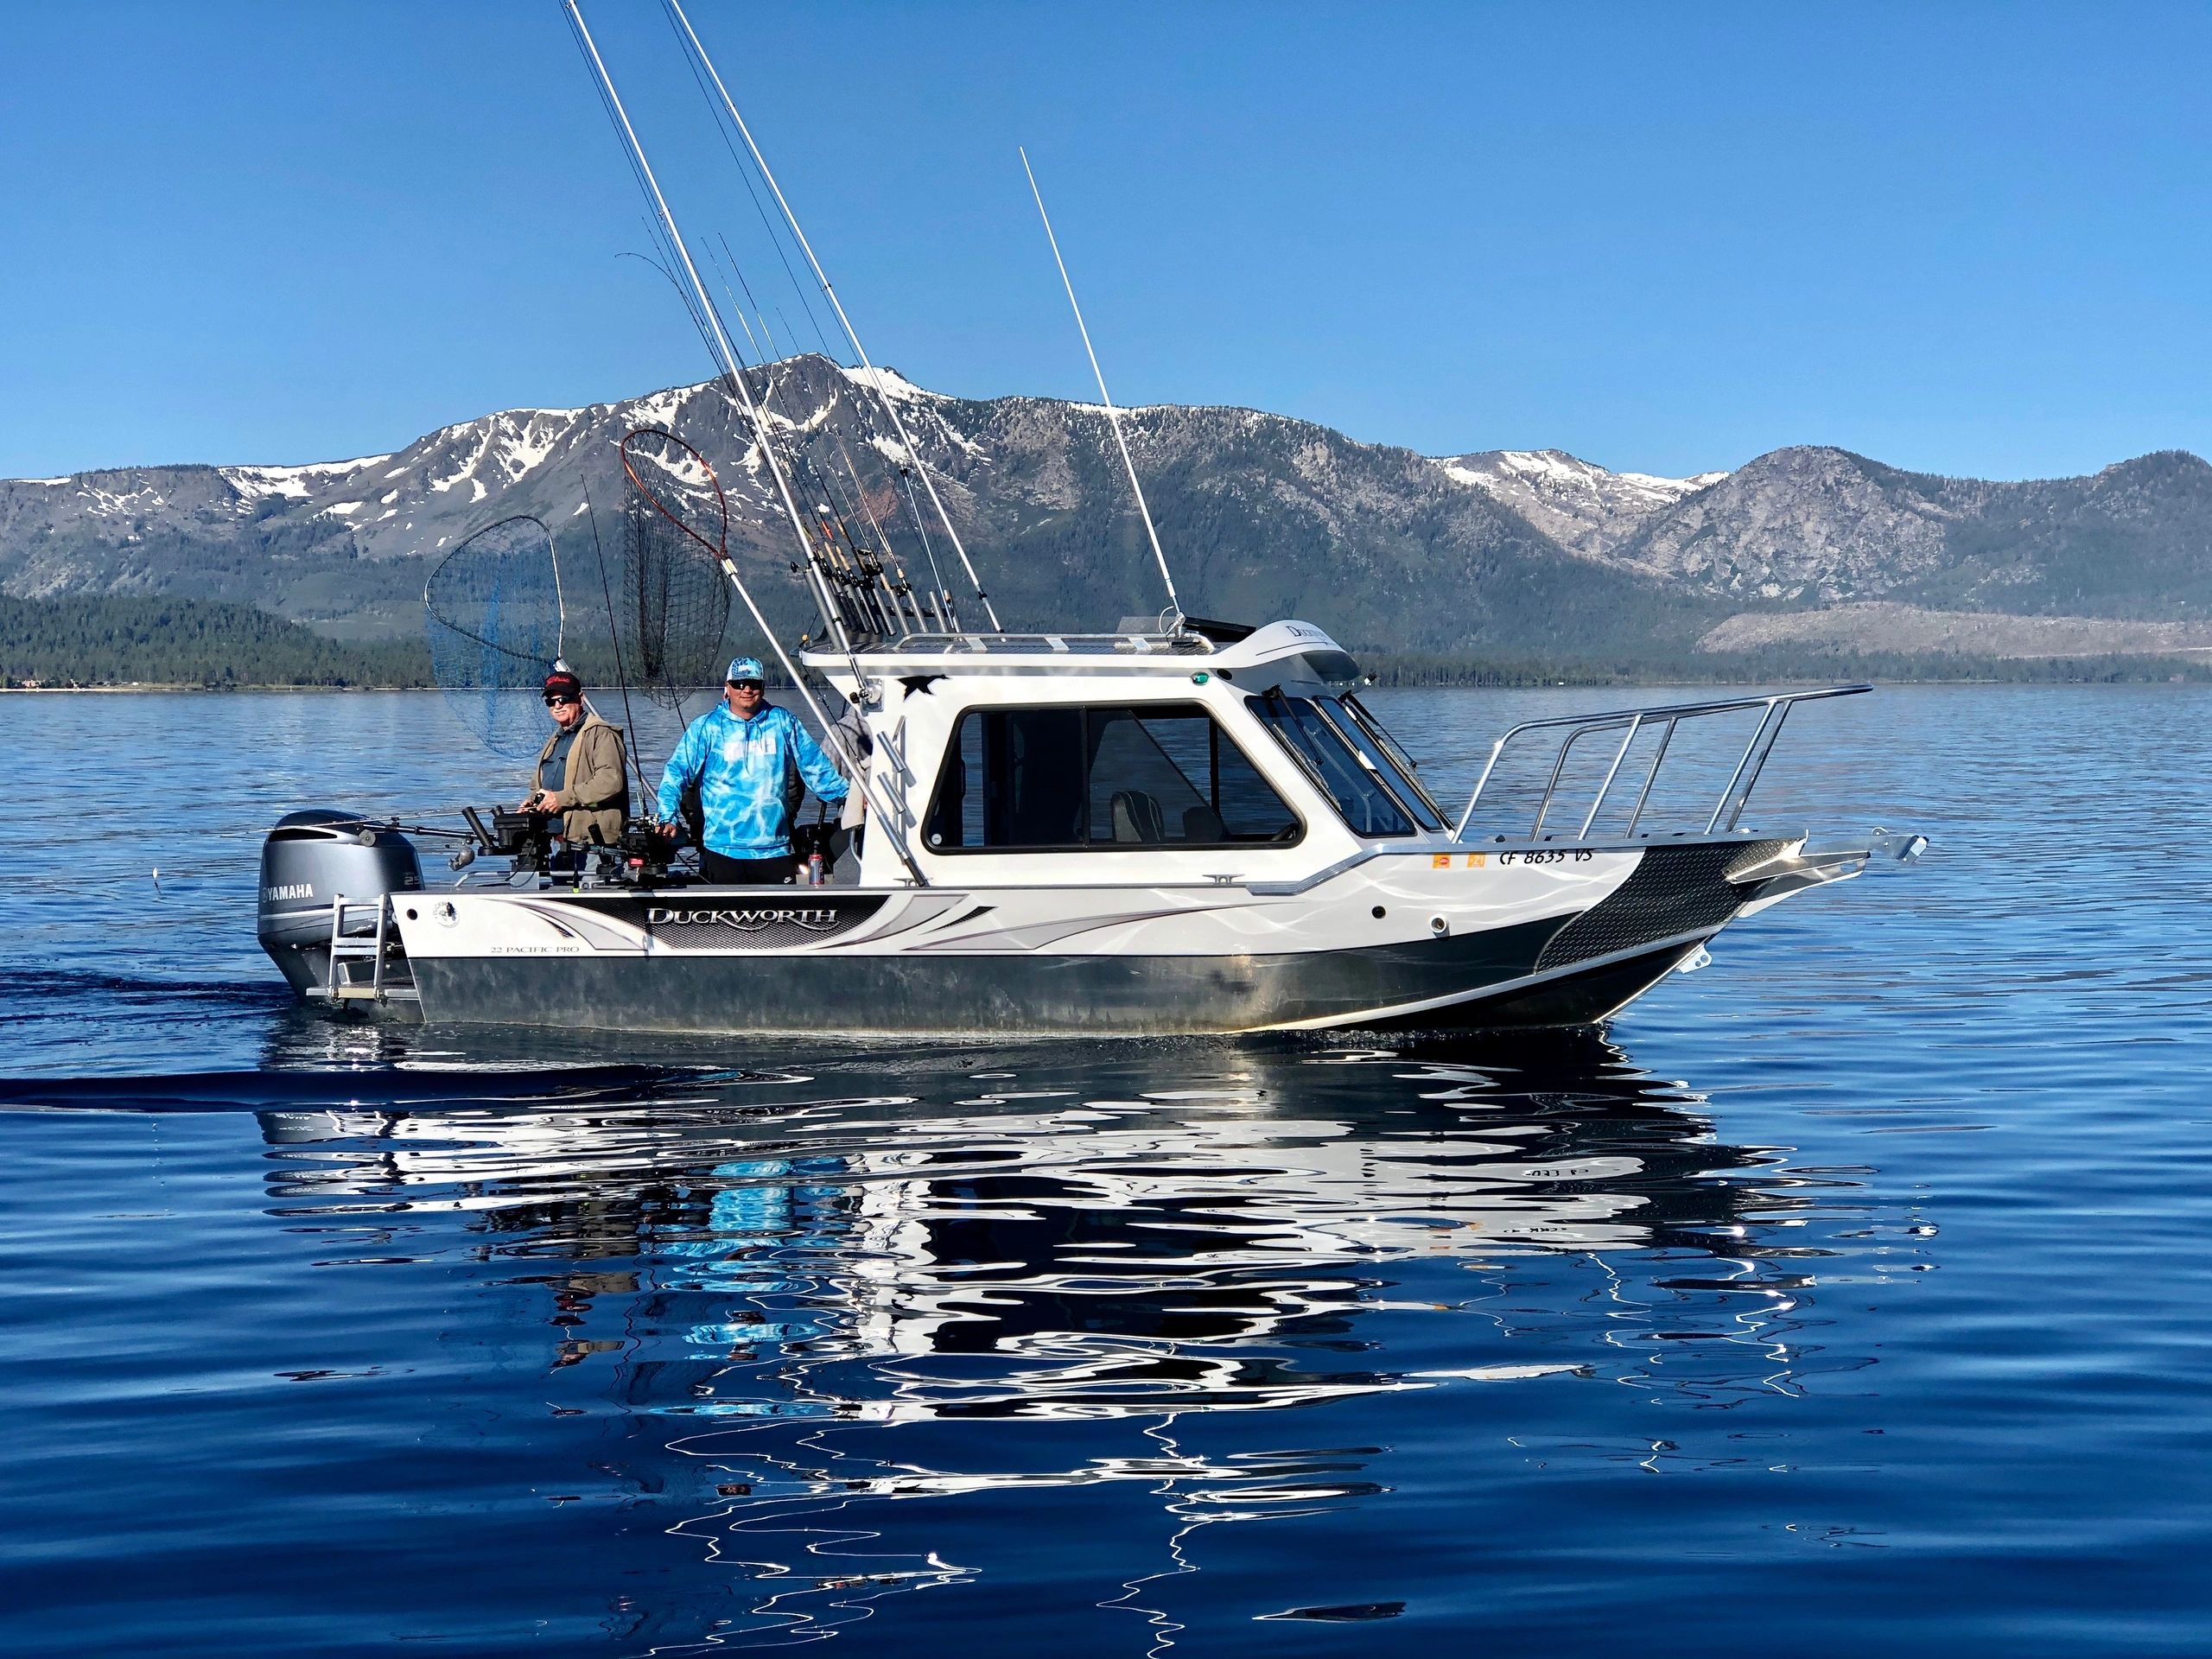 Tahoe Topliners Sportfishing - Fishing Lake Tahoe, Lake Tahoe Fishing